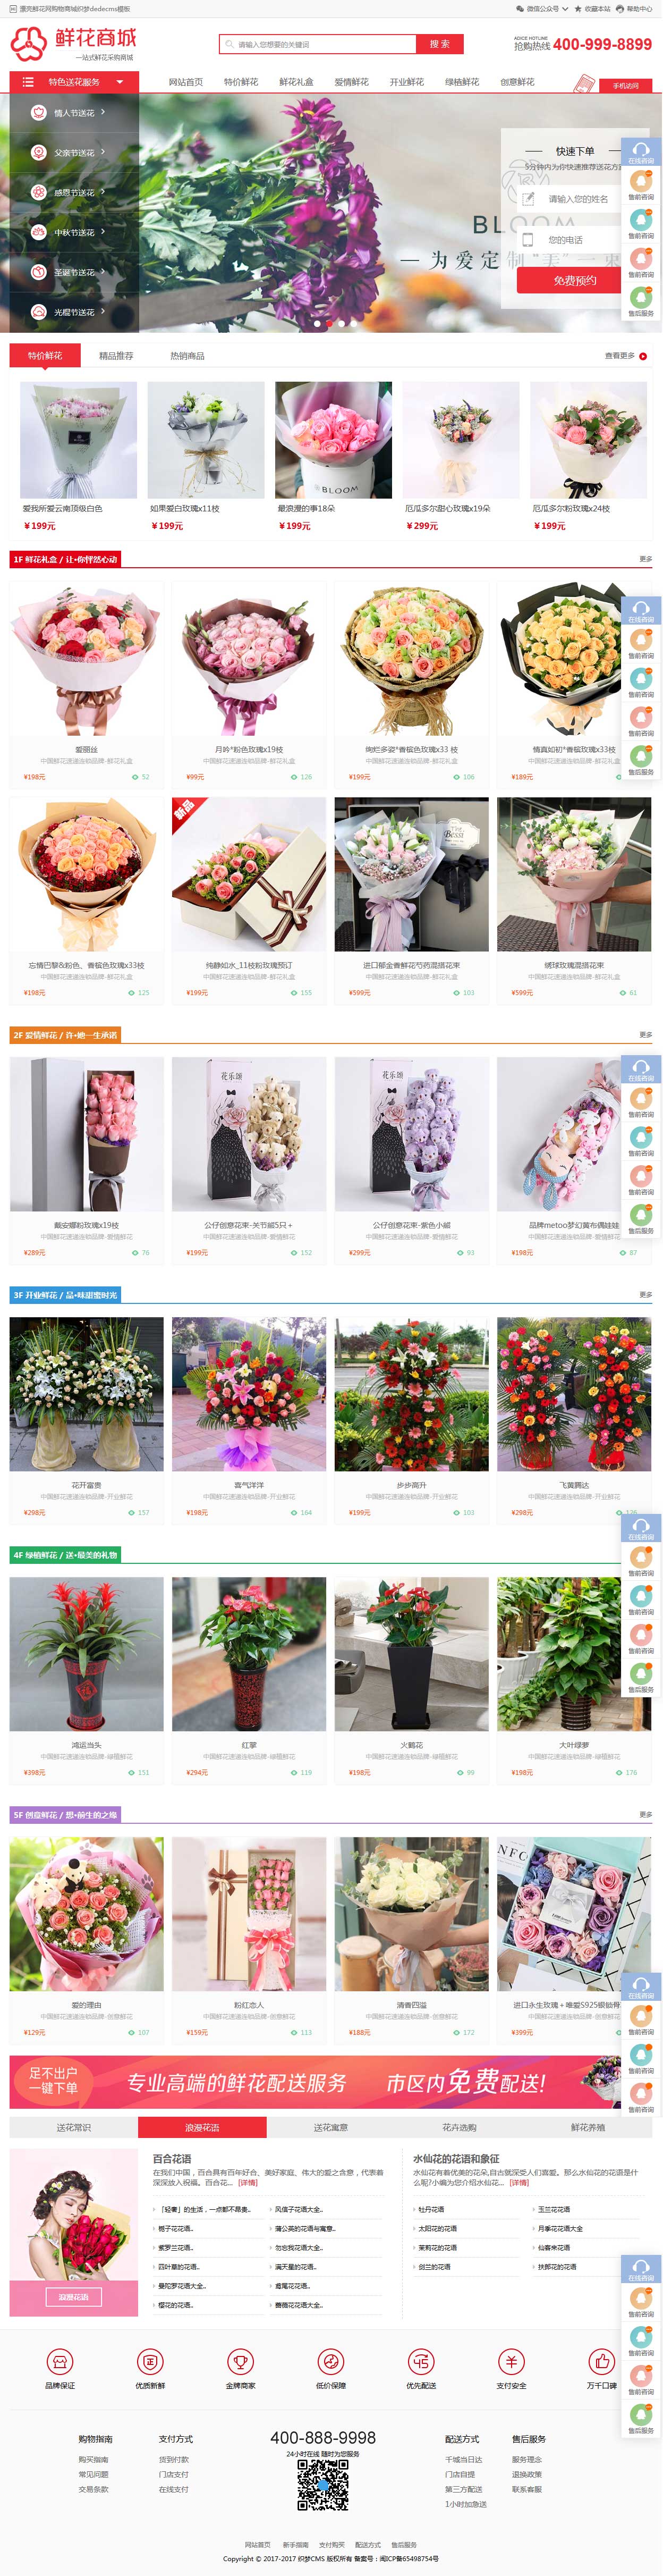 鲜花礼品购物商城网站织梦模板(带手机端)